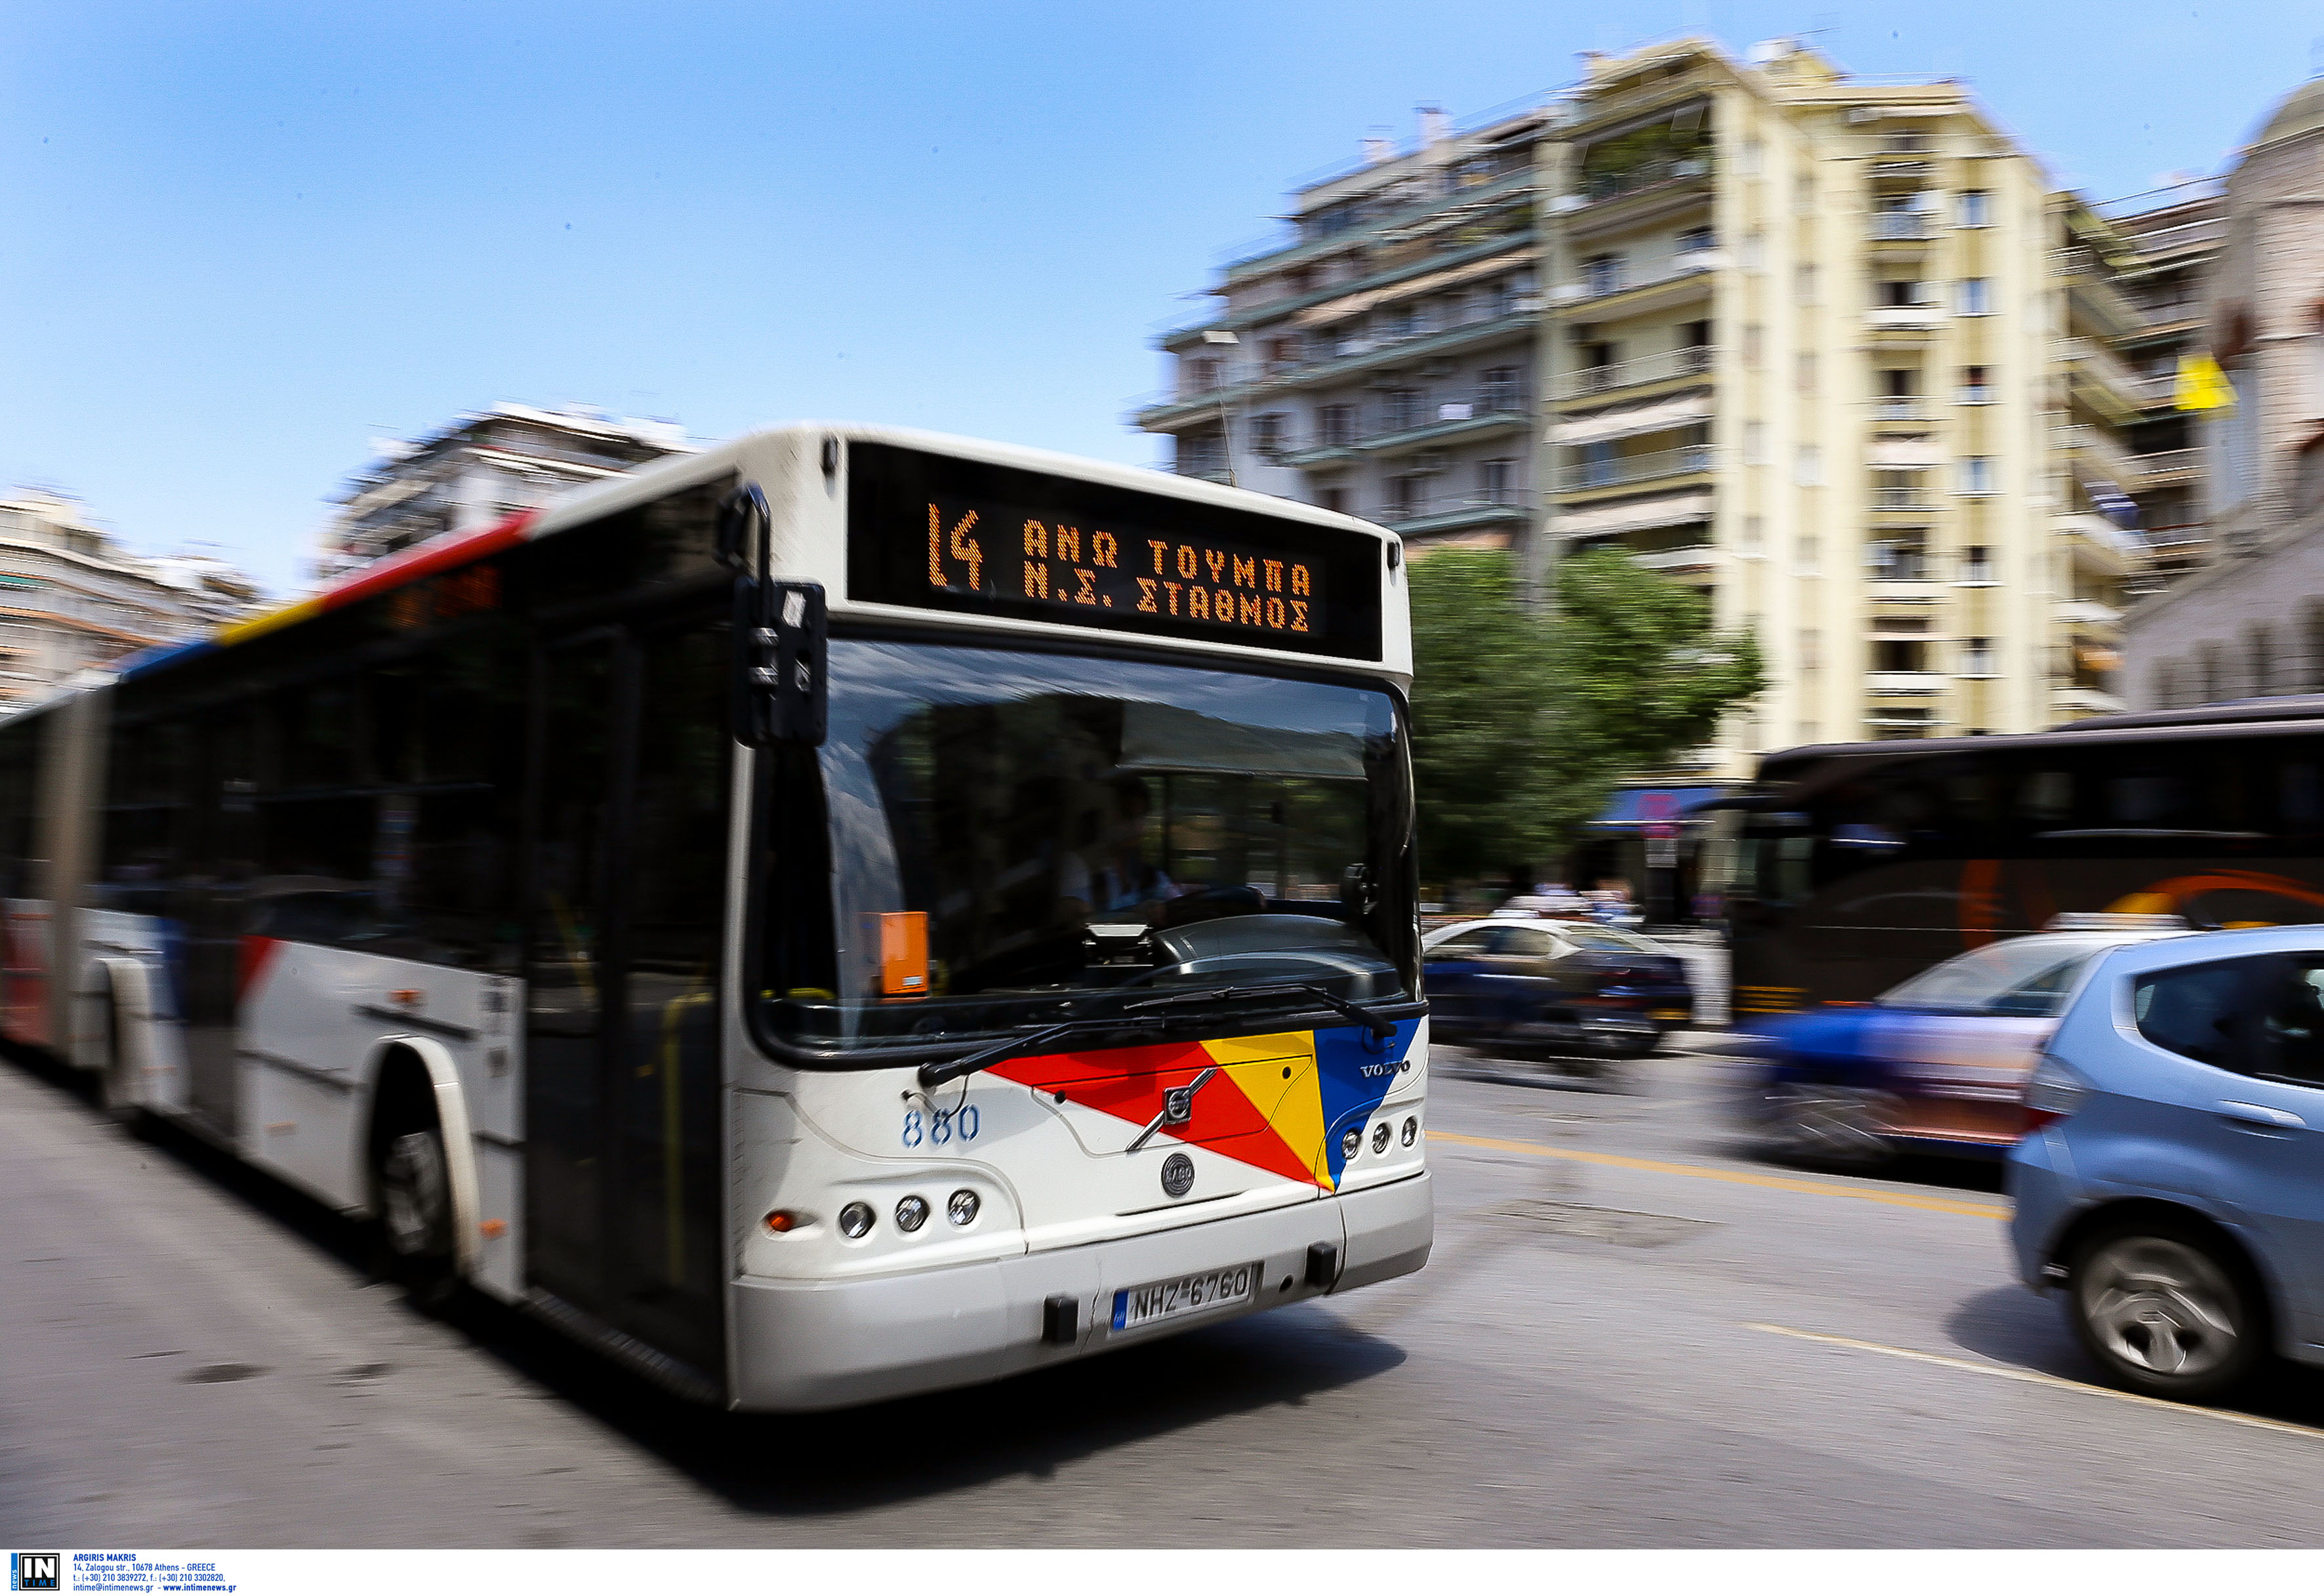 Θεσσαλονίκη: Σοβαρό επεισόδιο ξυλοδαρμού σε λεωφορείο